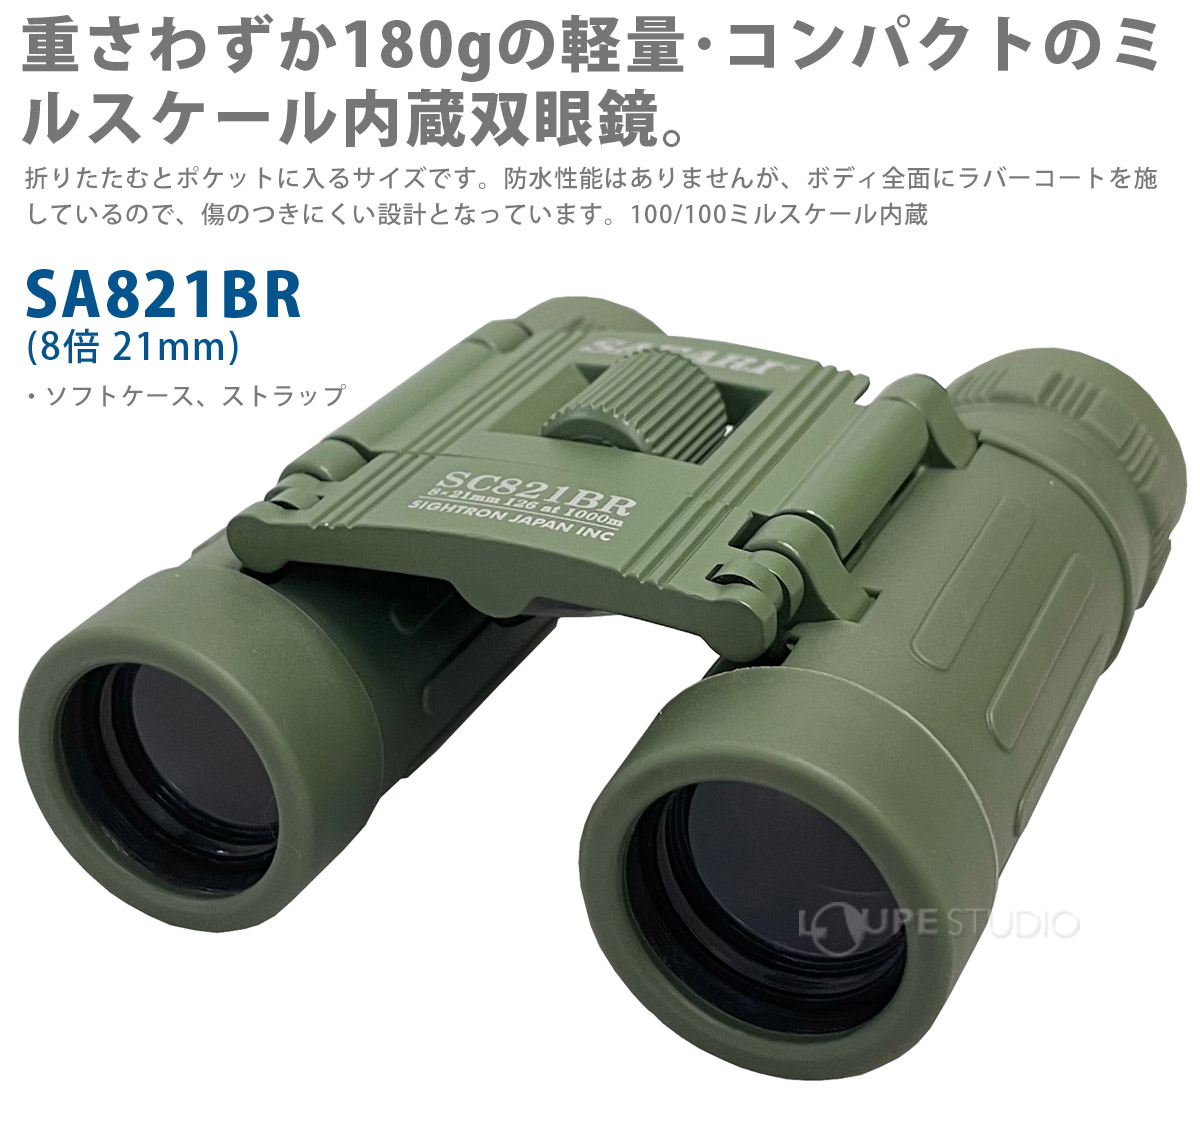 サイトロン ミリタリー双眼鏡SAFARI SC821BR SIGHTRON 8倍 21mm 軍用 